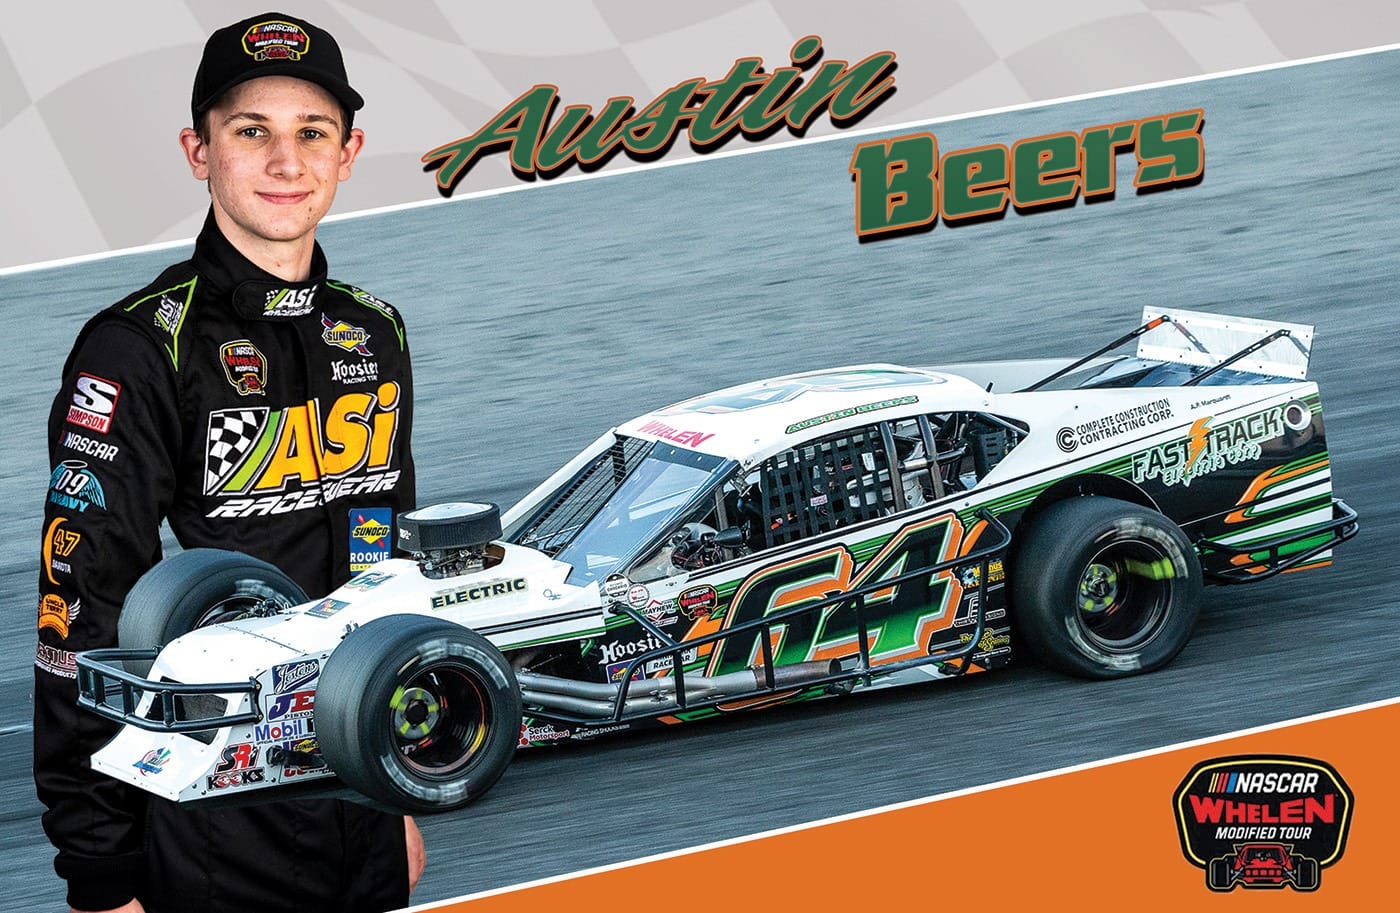 Austin Beers Racing Hero Card